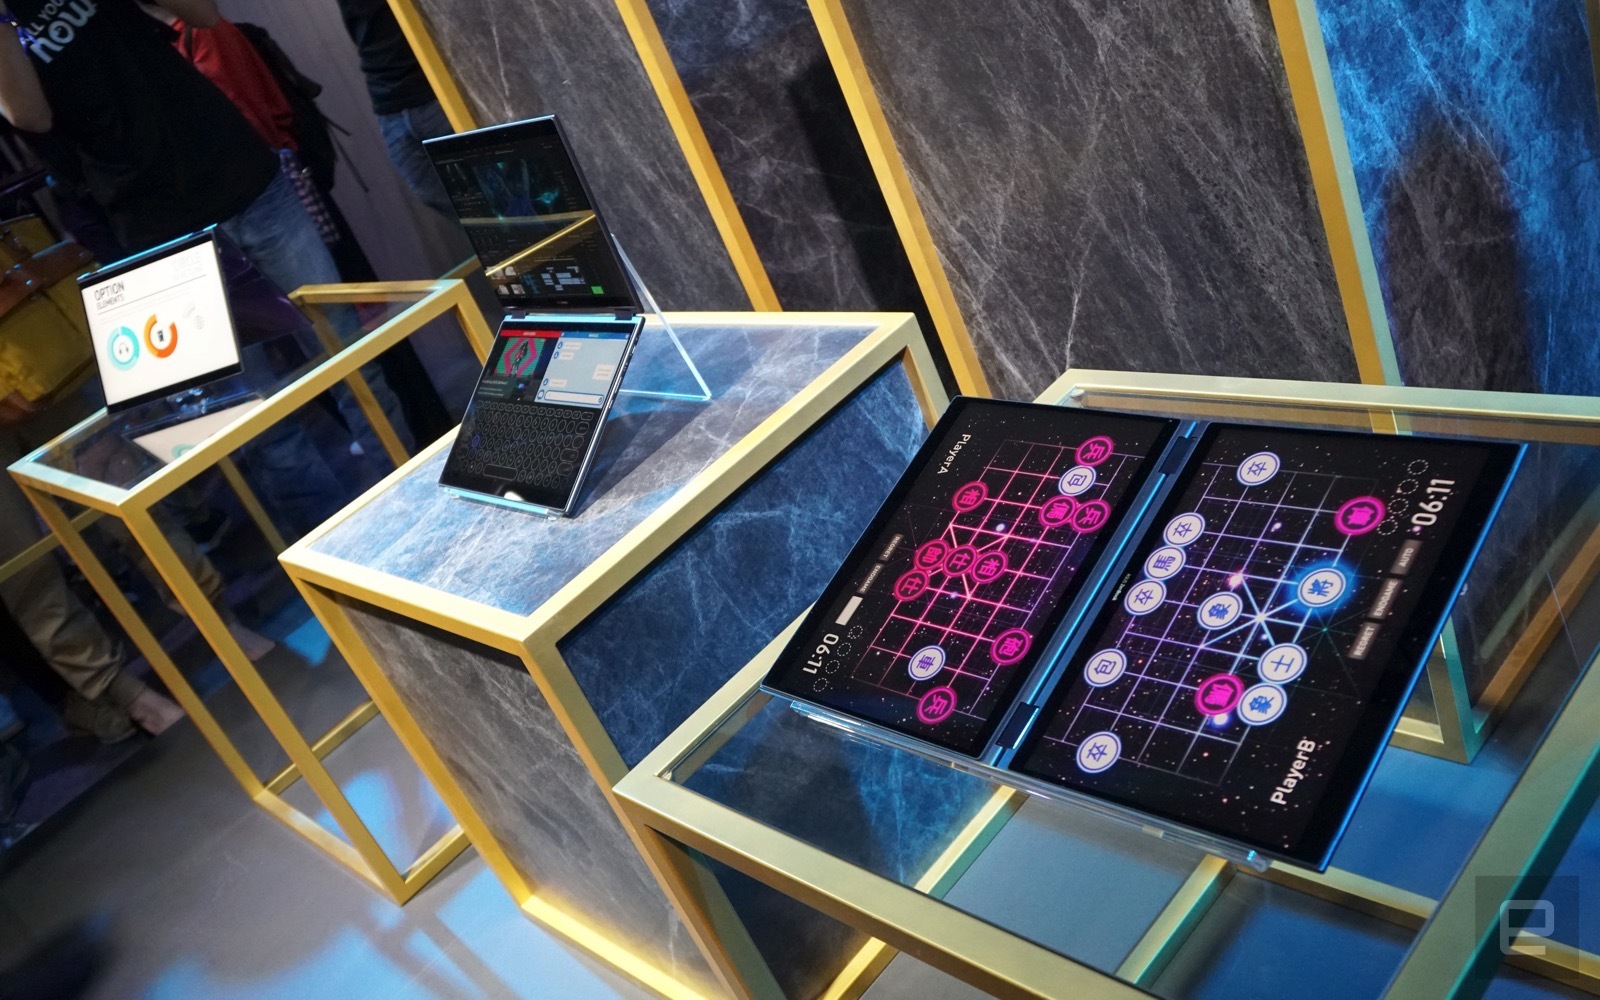 Çift ekranlı Asus Project Precog tablet bilgisayar geleceği yansıtıyor